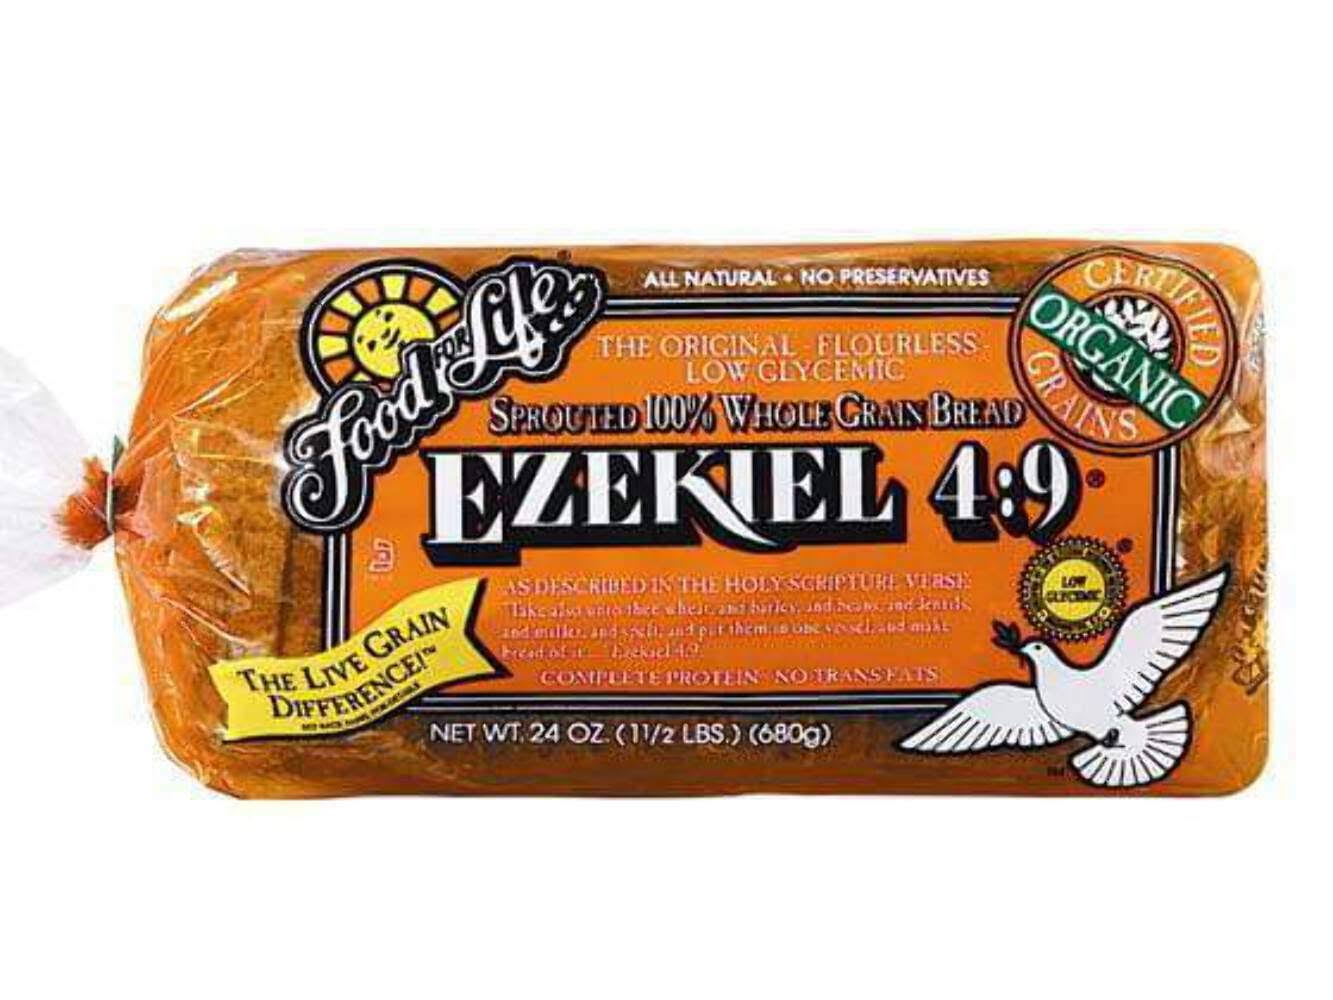 Food for Life Ezekiel 4:9 Bread